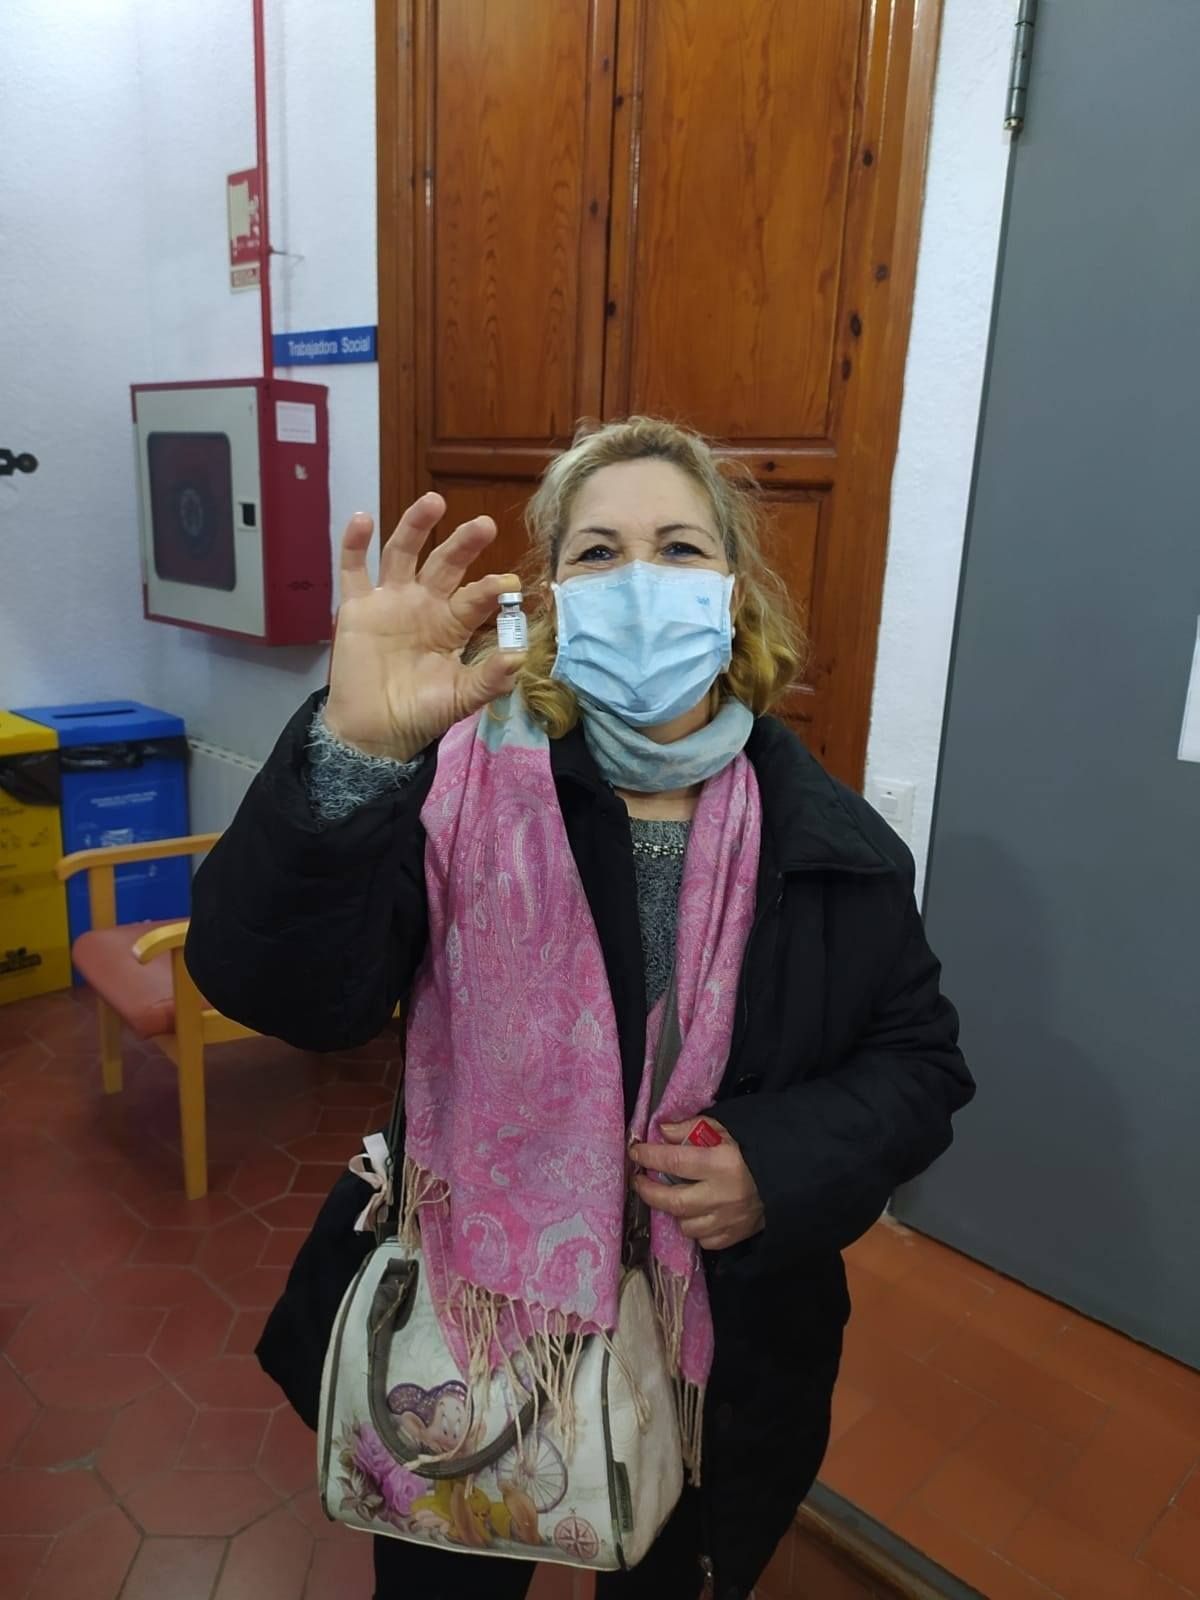 El mundo de las Fallas participa en la lucha contra la pandemia desde el sector sanitario